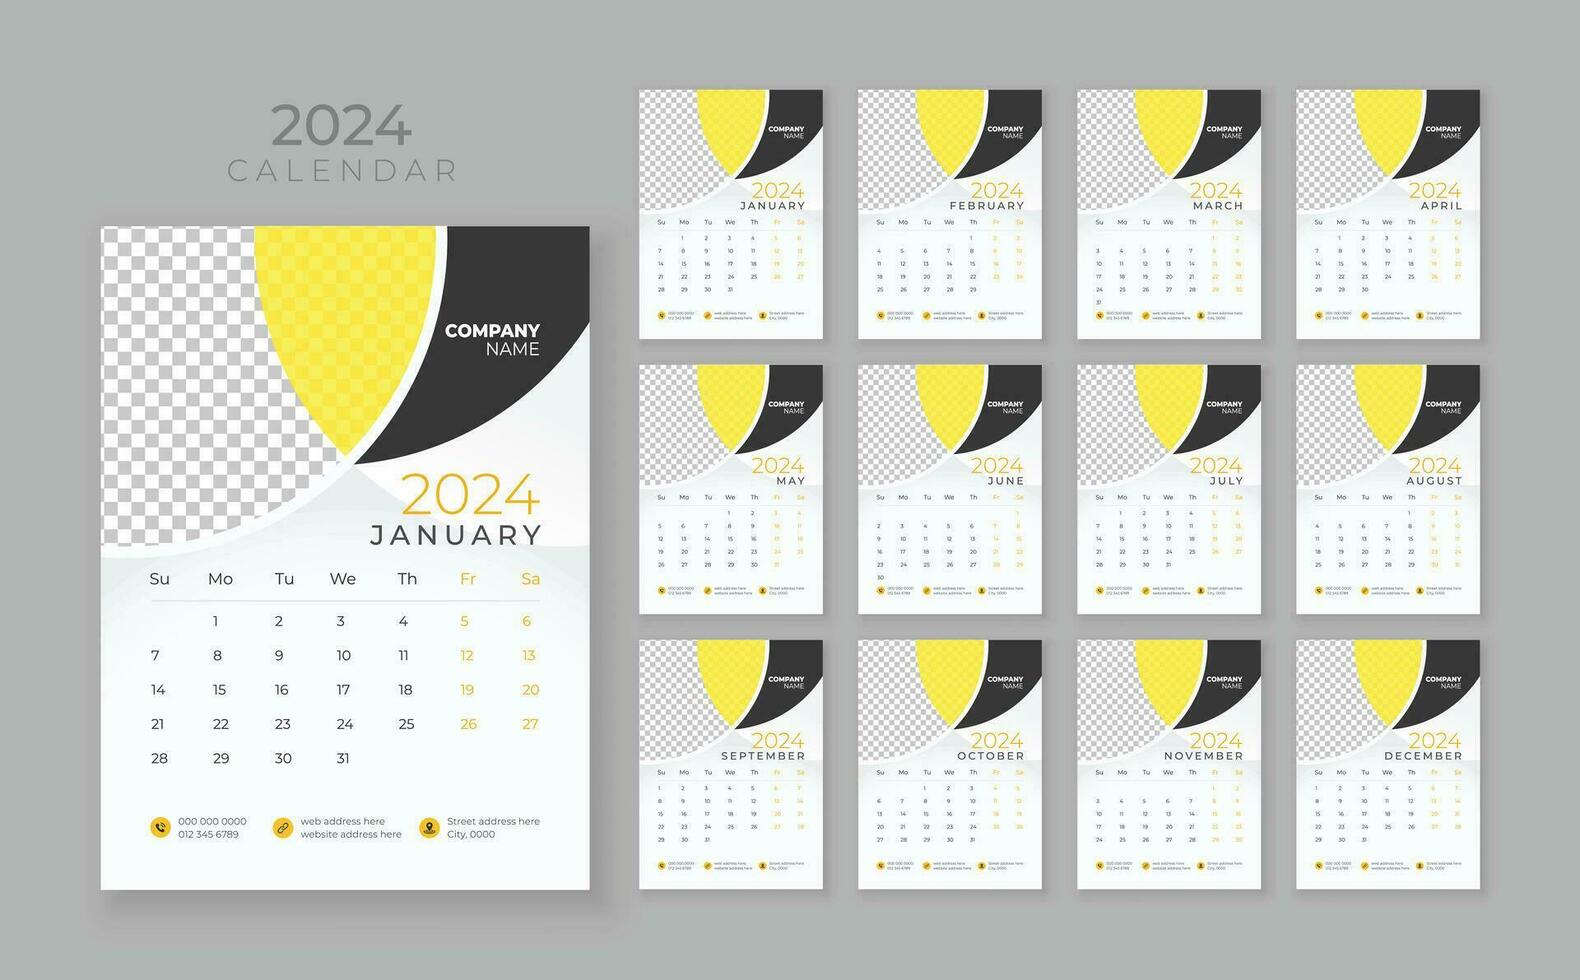 vägg kalender 2024, företag kalender mall, vecka Start söndag, vektor vägg kalender 2024, vägg kalender i en minimalistisk stil